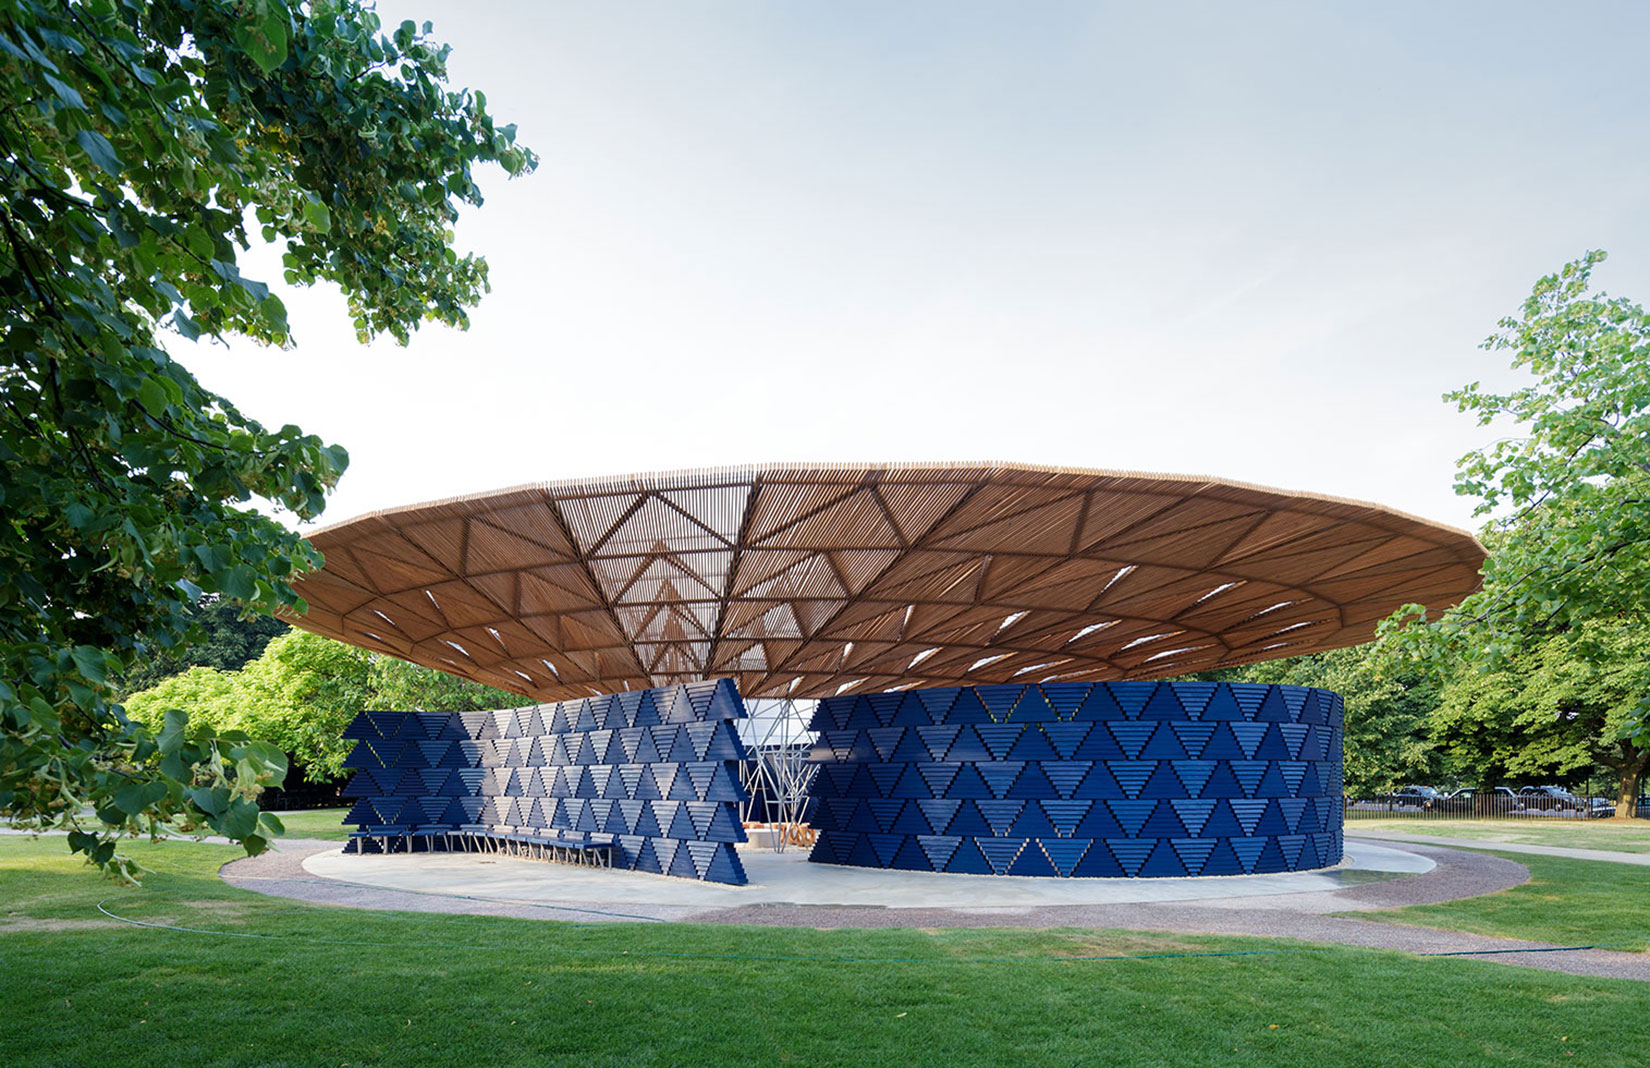 Serpentine Pavilion 2017, designed by Francis Kéré